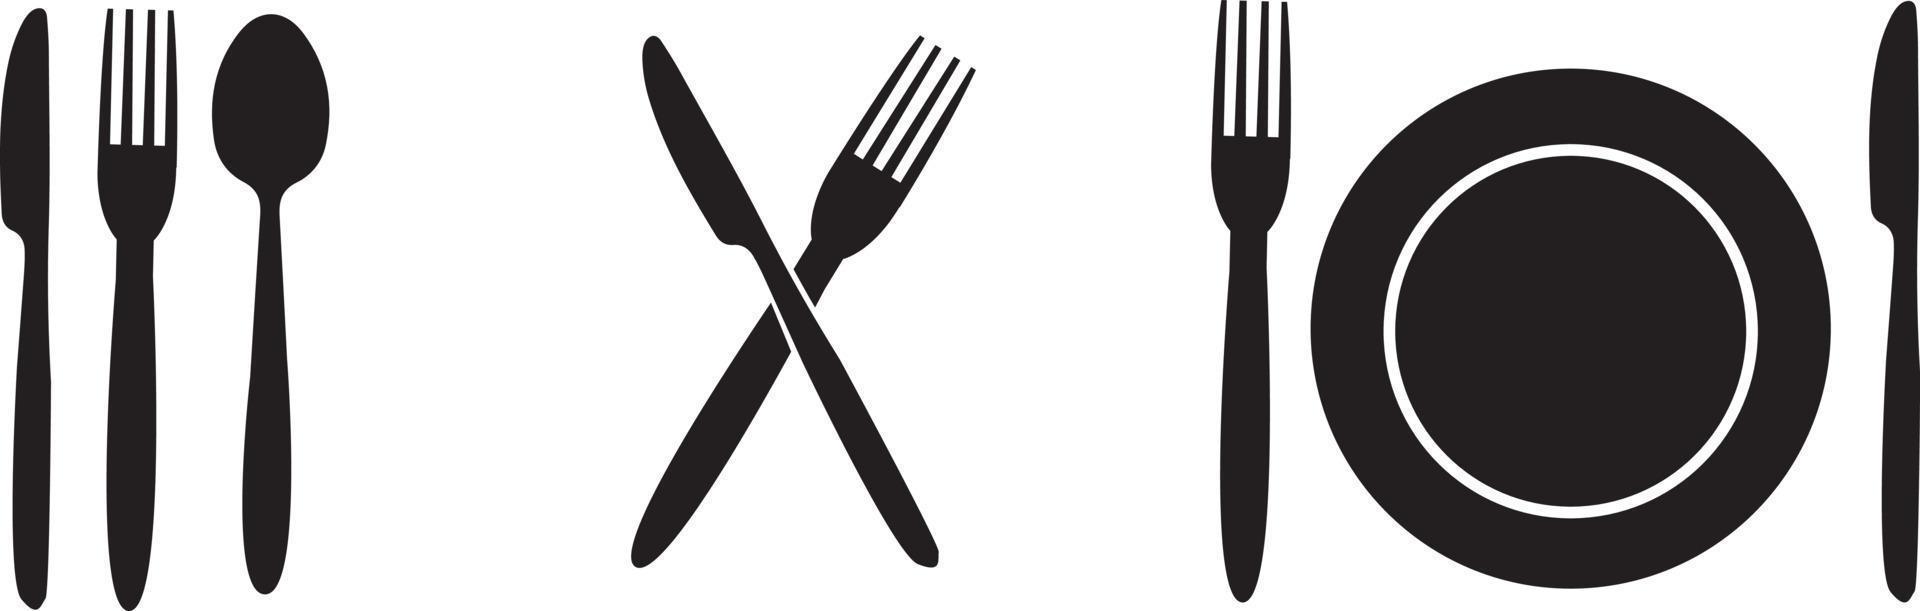 lepel, vork en mes icon set. vectorillustratie in vlakke stijl. vector